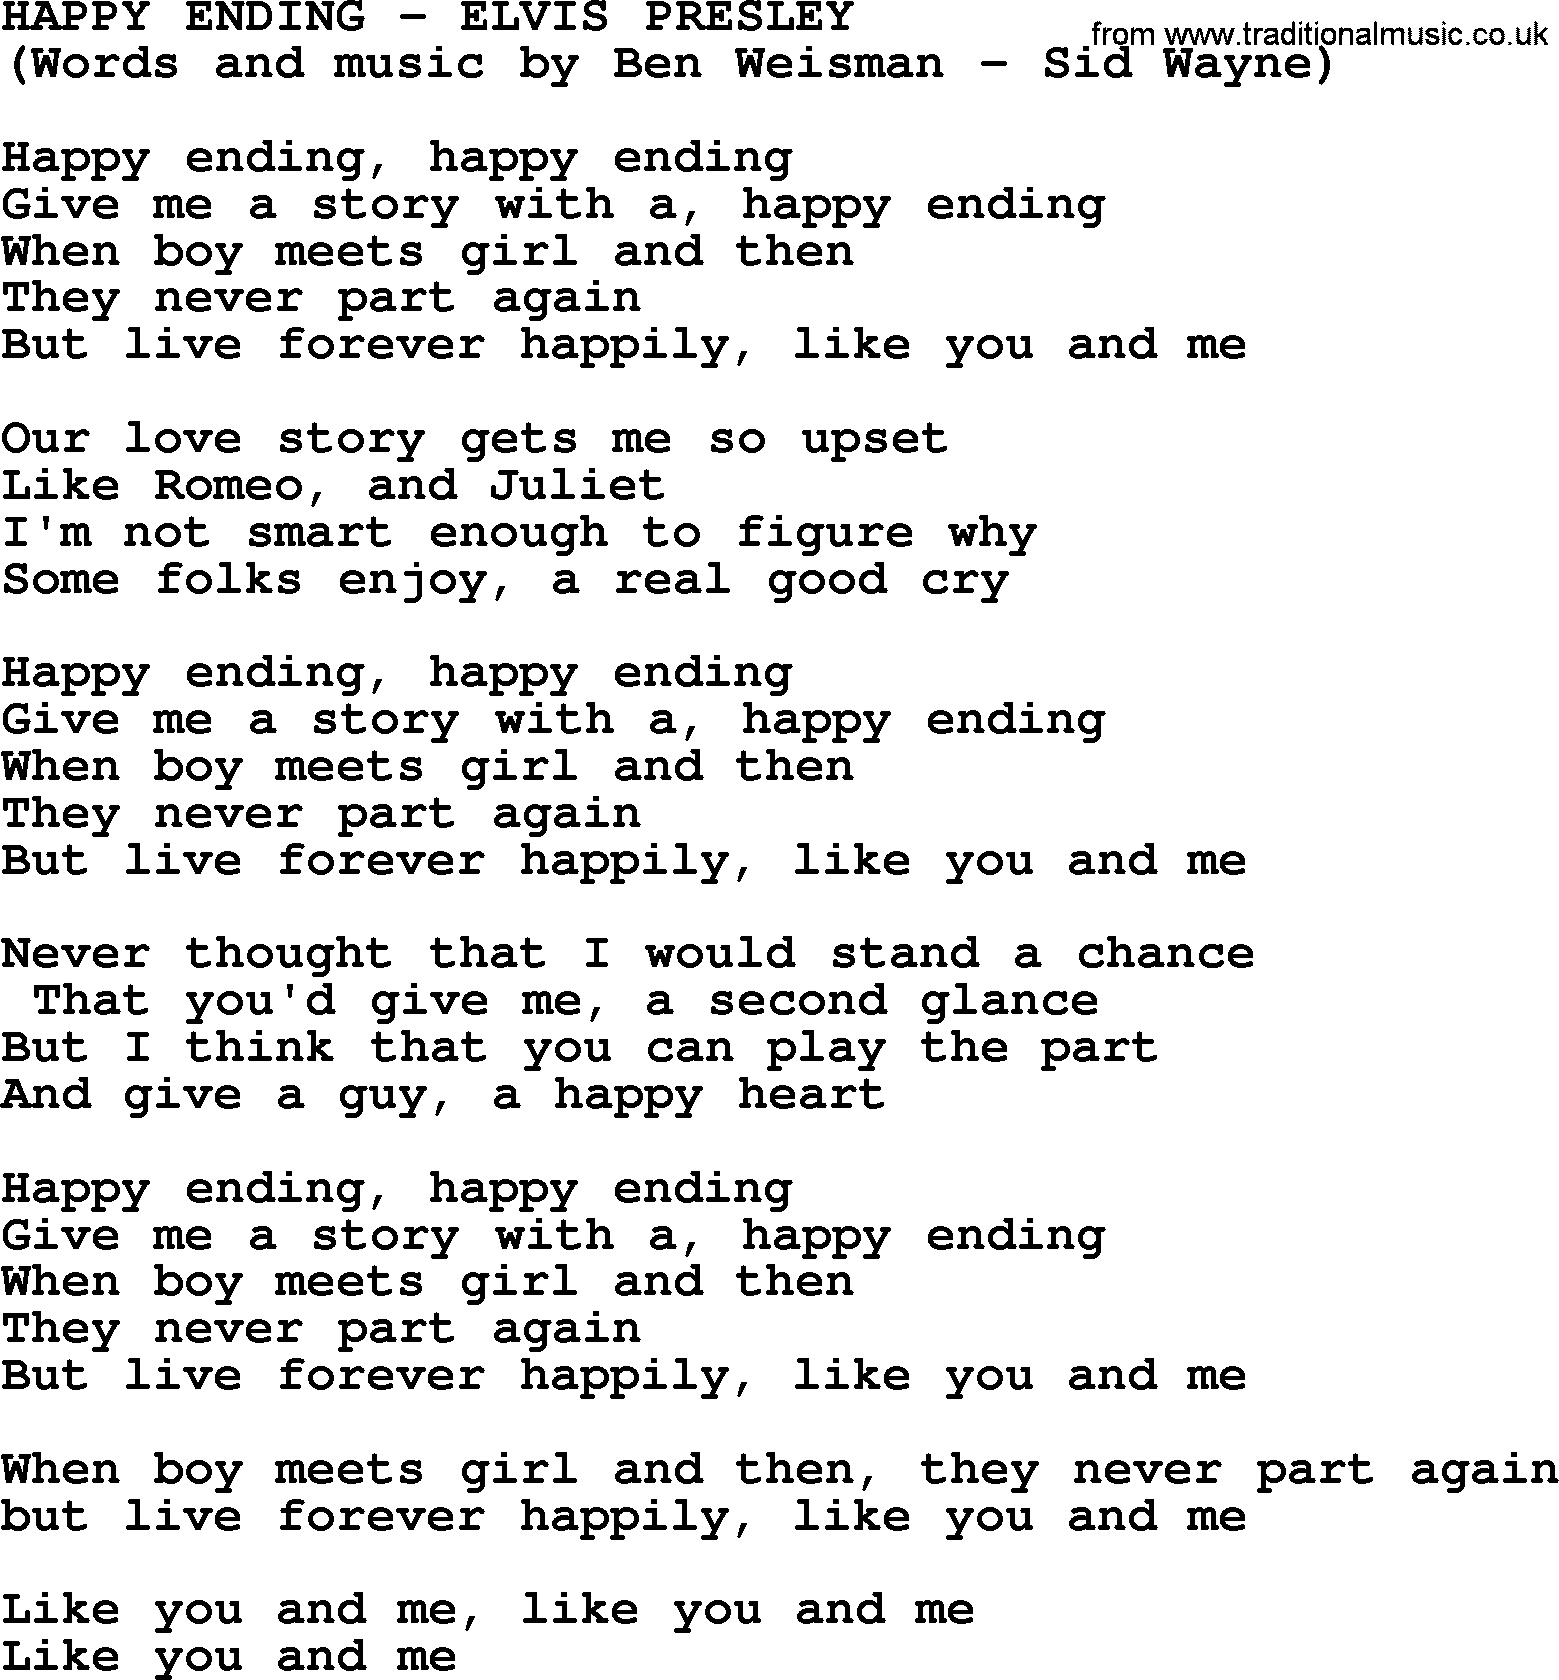 Elvis Presley song: Happy Ending lyrics